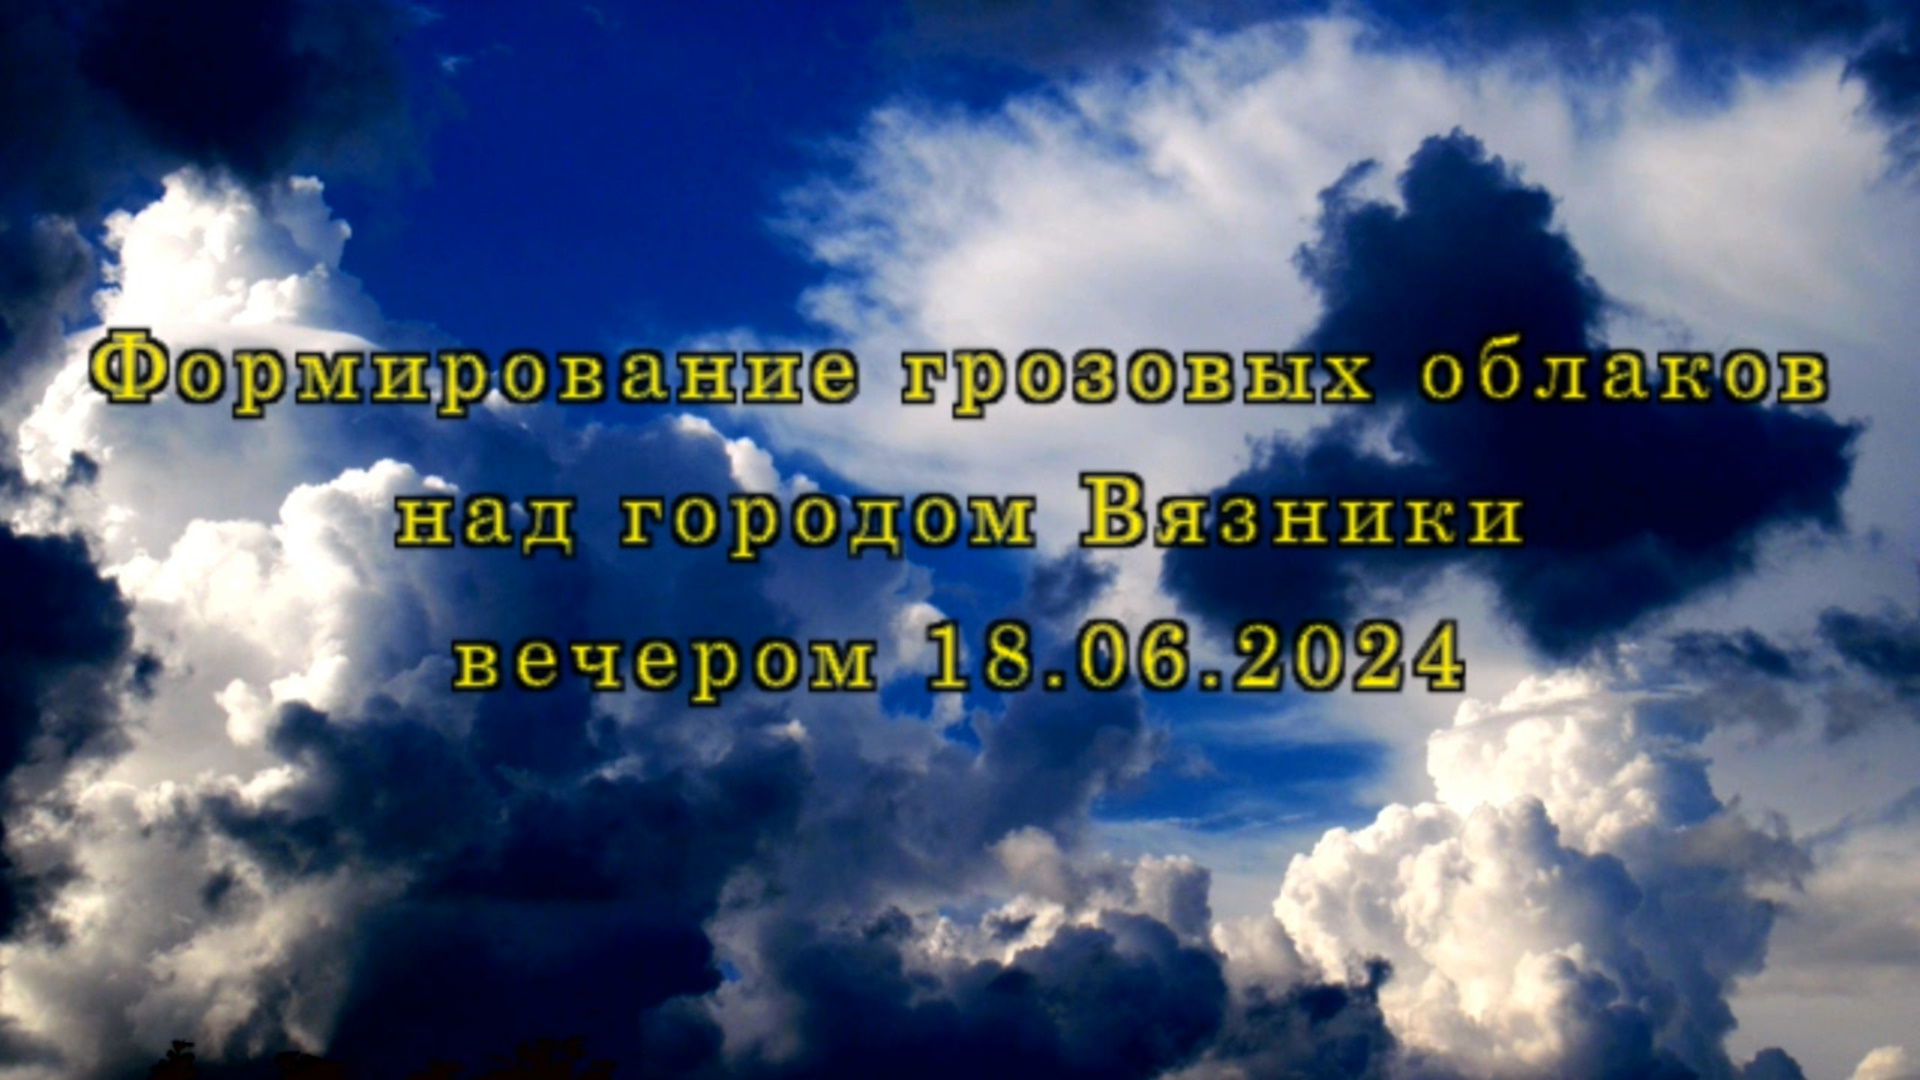 Формирование грозовых облаков над городом Вязники вечером 18.06.2024